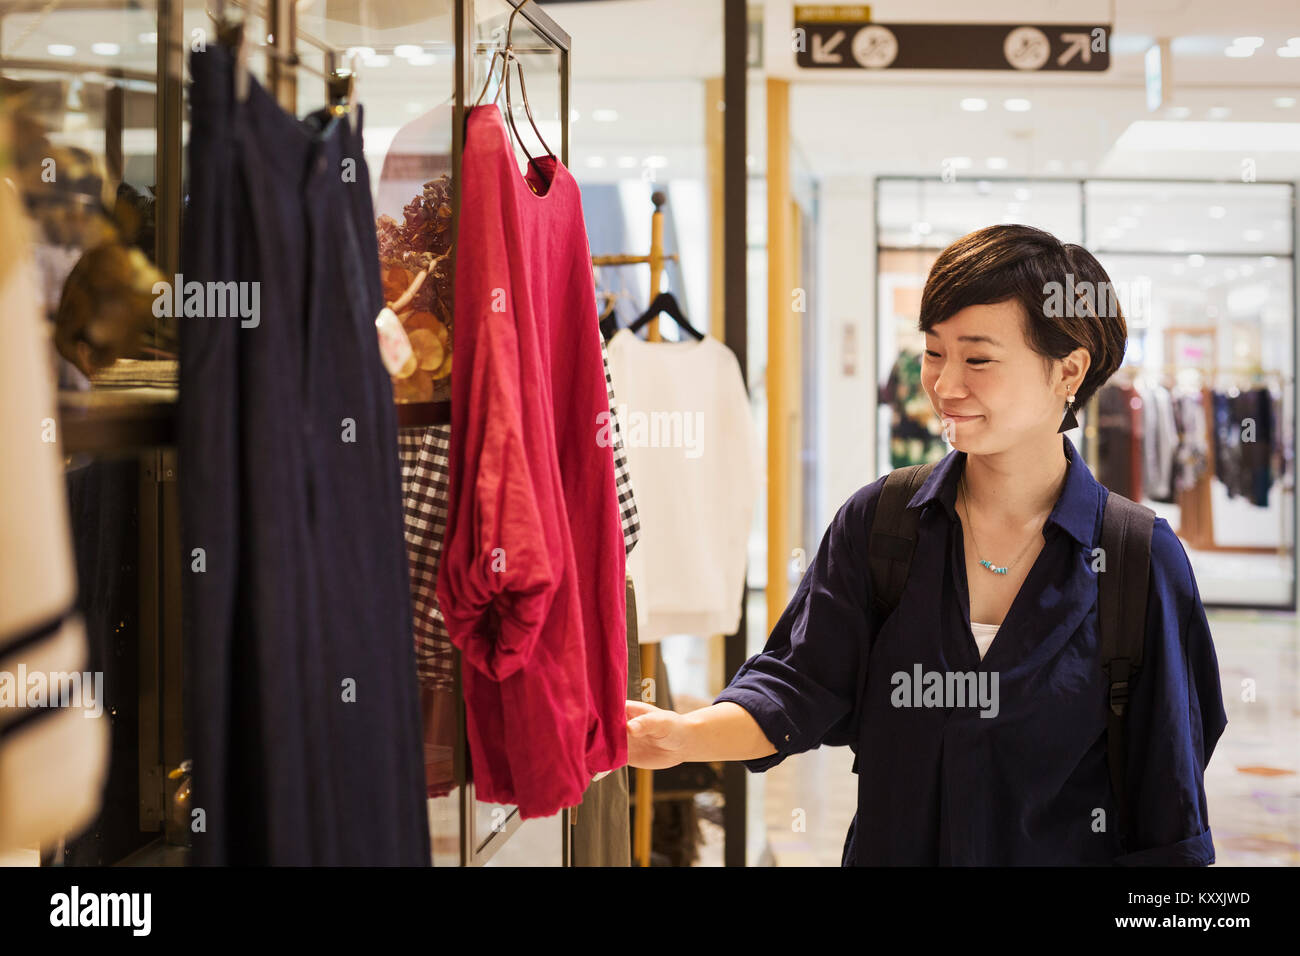 Frau mit schwarzen Haaren trägt blaue Hemd steht drinnen, an Kleidung in einem Geschäft suchen. Stockfoto